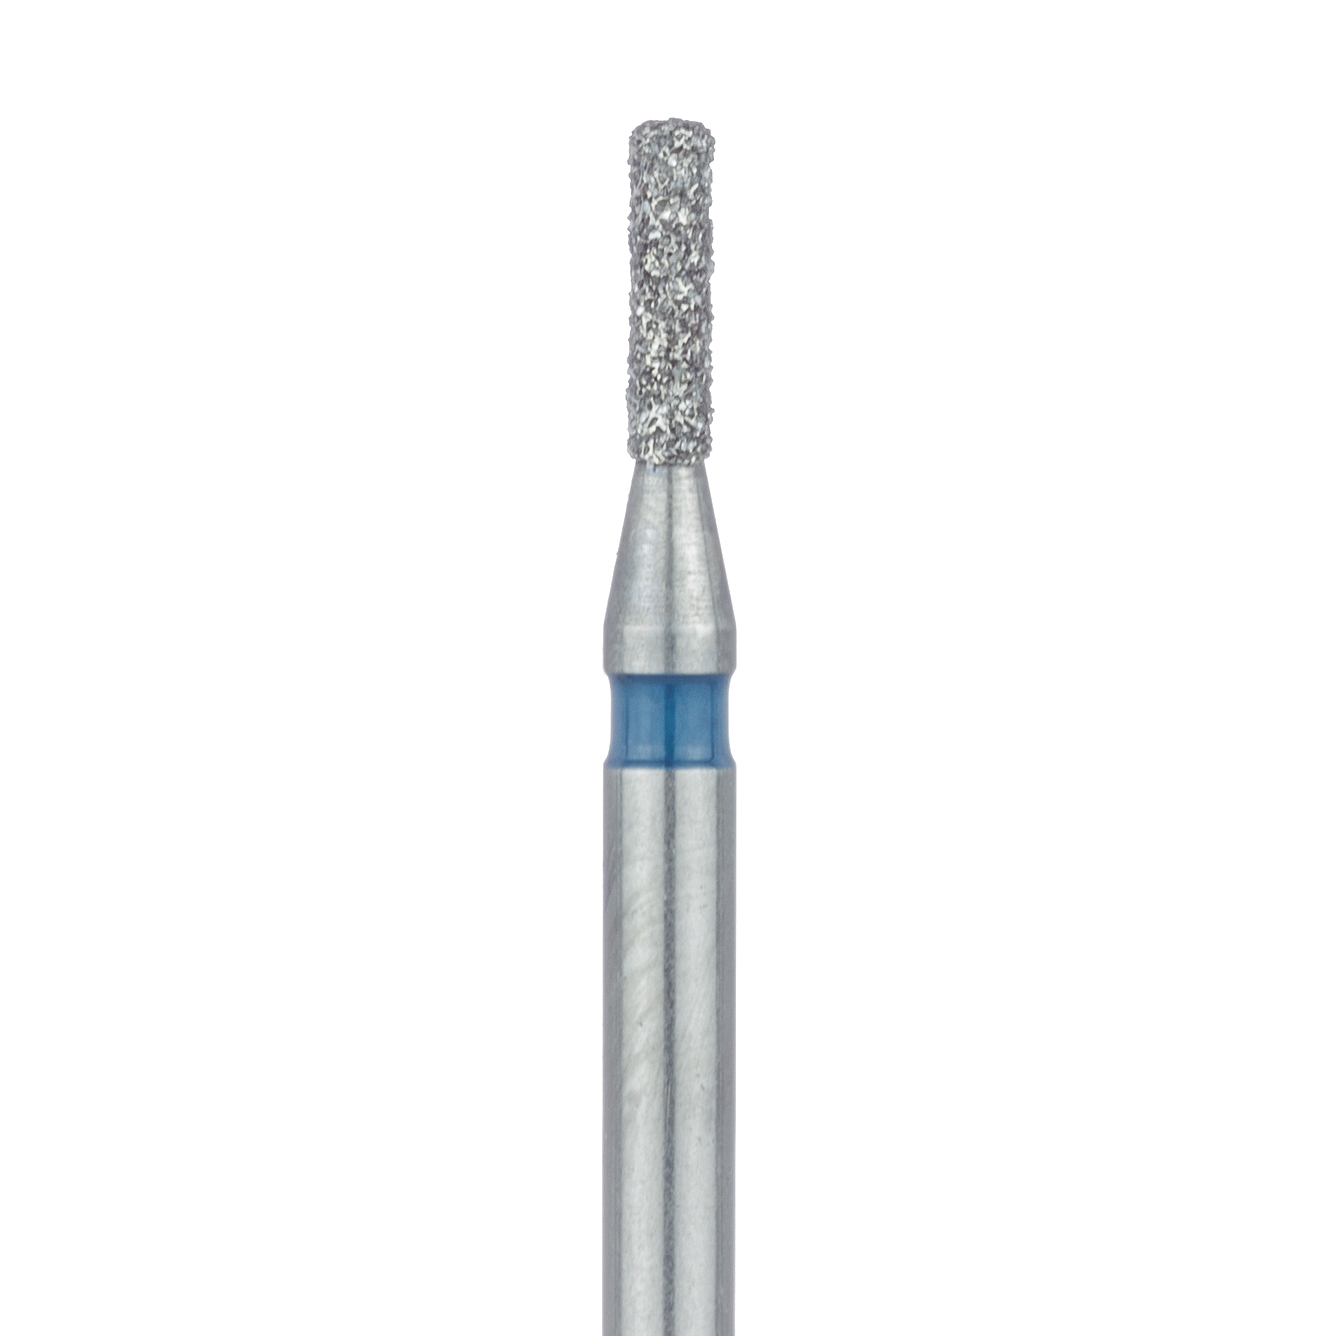 840-010-FG Round Edge Cylinder Diamond Bur, 0.8mm Ø, Medium, FG